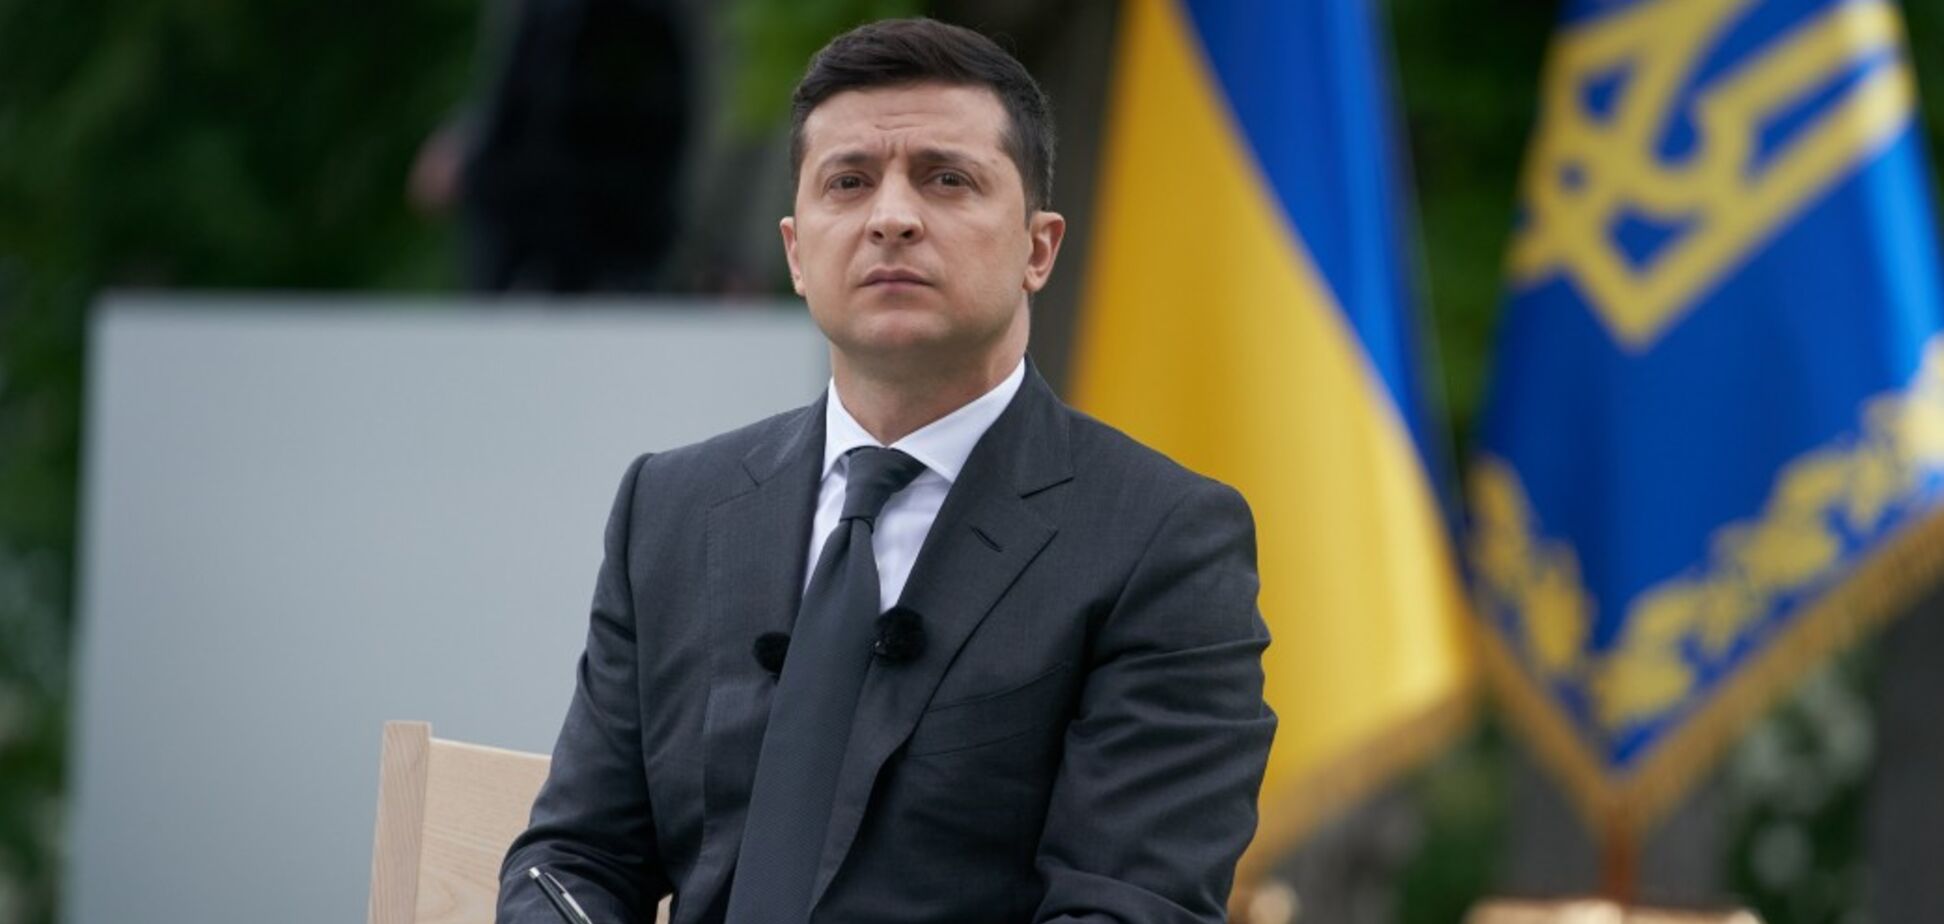 У 'ДНР' готують трибунал для Зеленського: озвучені безглузді звинувачення